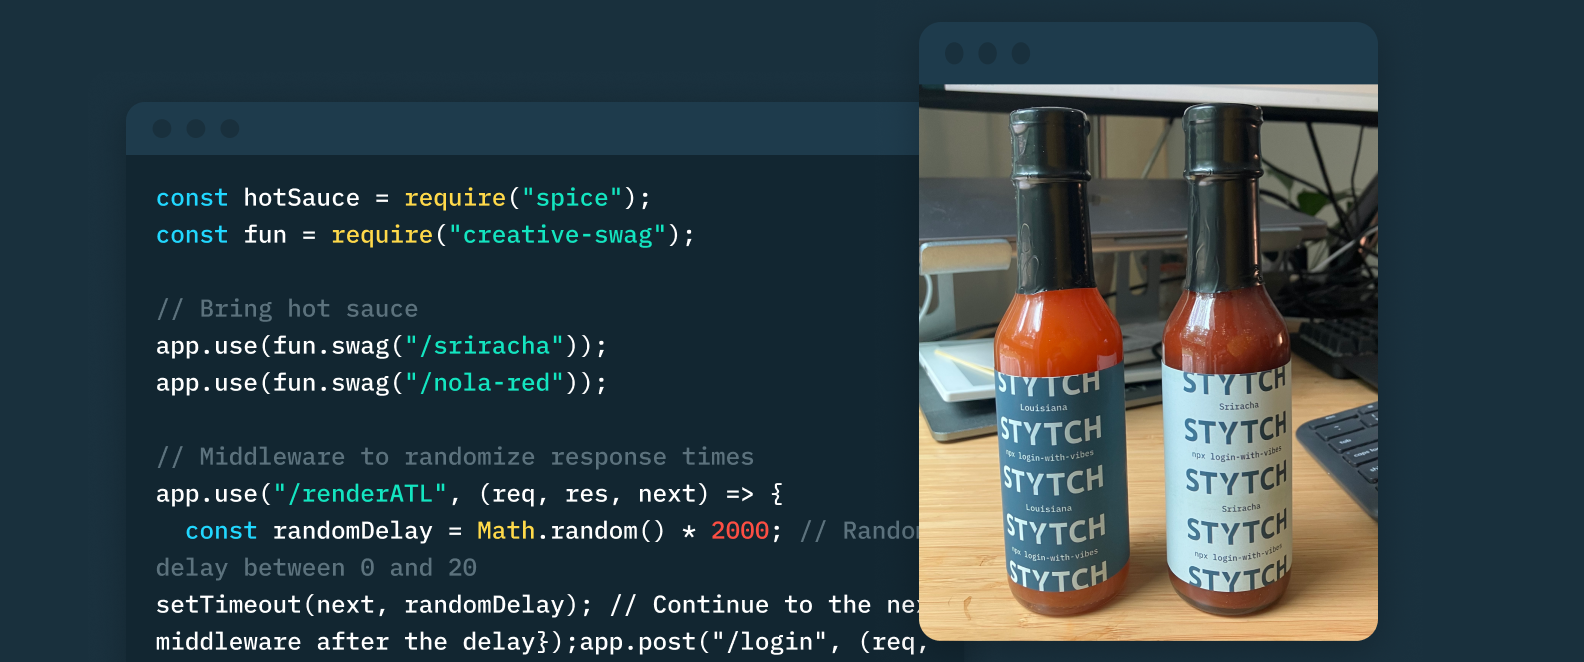 Stytch's hot sauce in a photo alongside a window of code